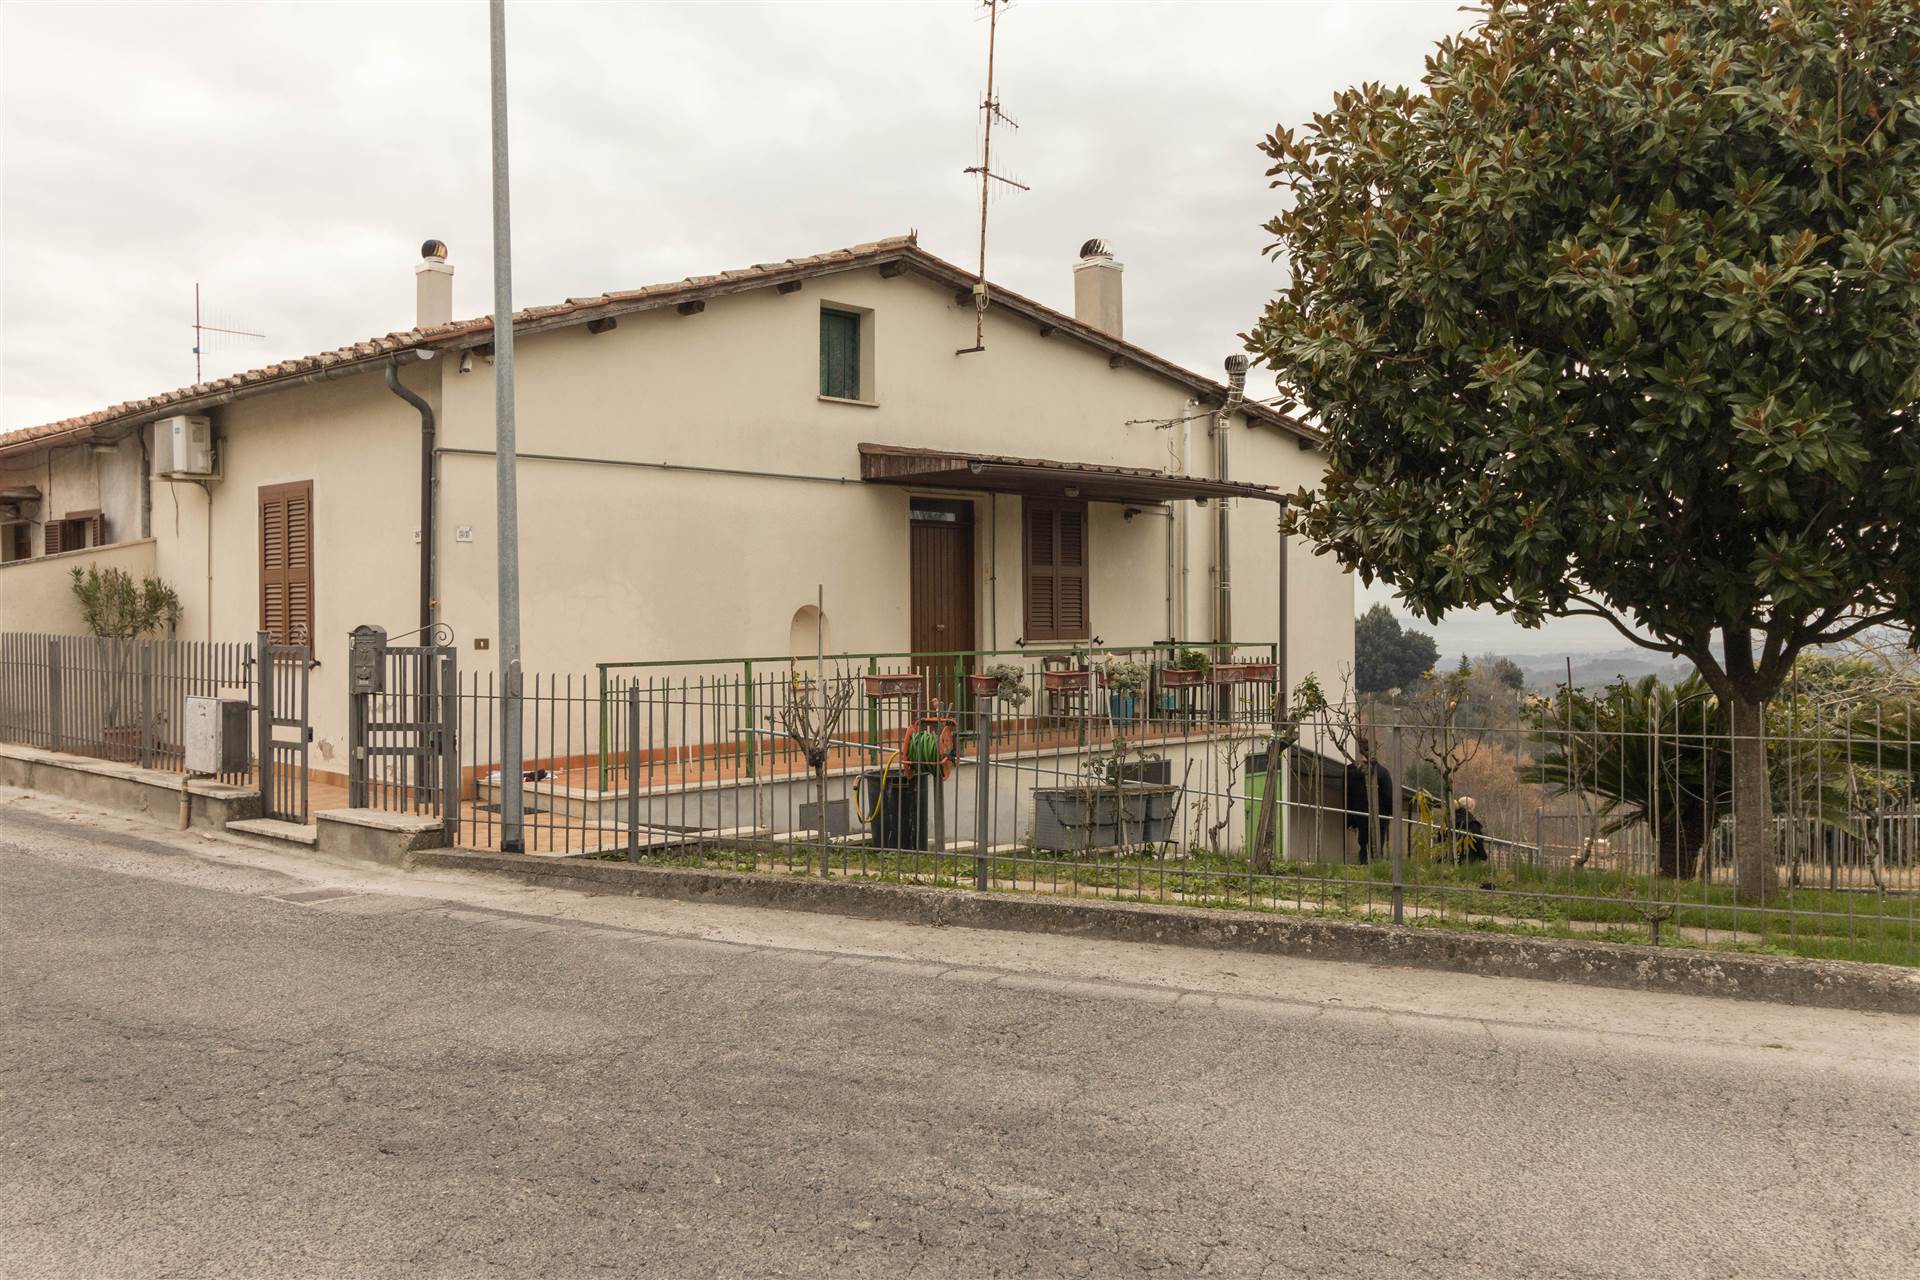 Villa Bifamiliare in vendita a Poggio Mirteto, 3 locali, zona Località: FUORI DAZIO, prezzo € 135.000 | PortaleAgenzieImmobiliari.it